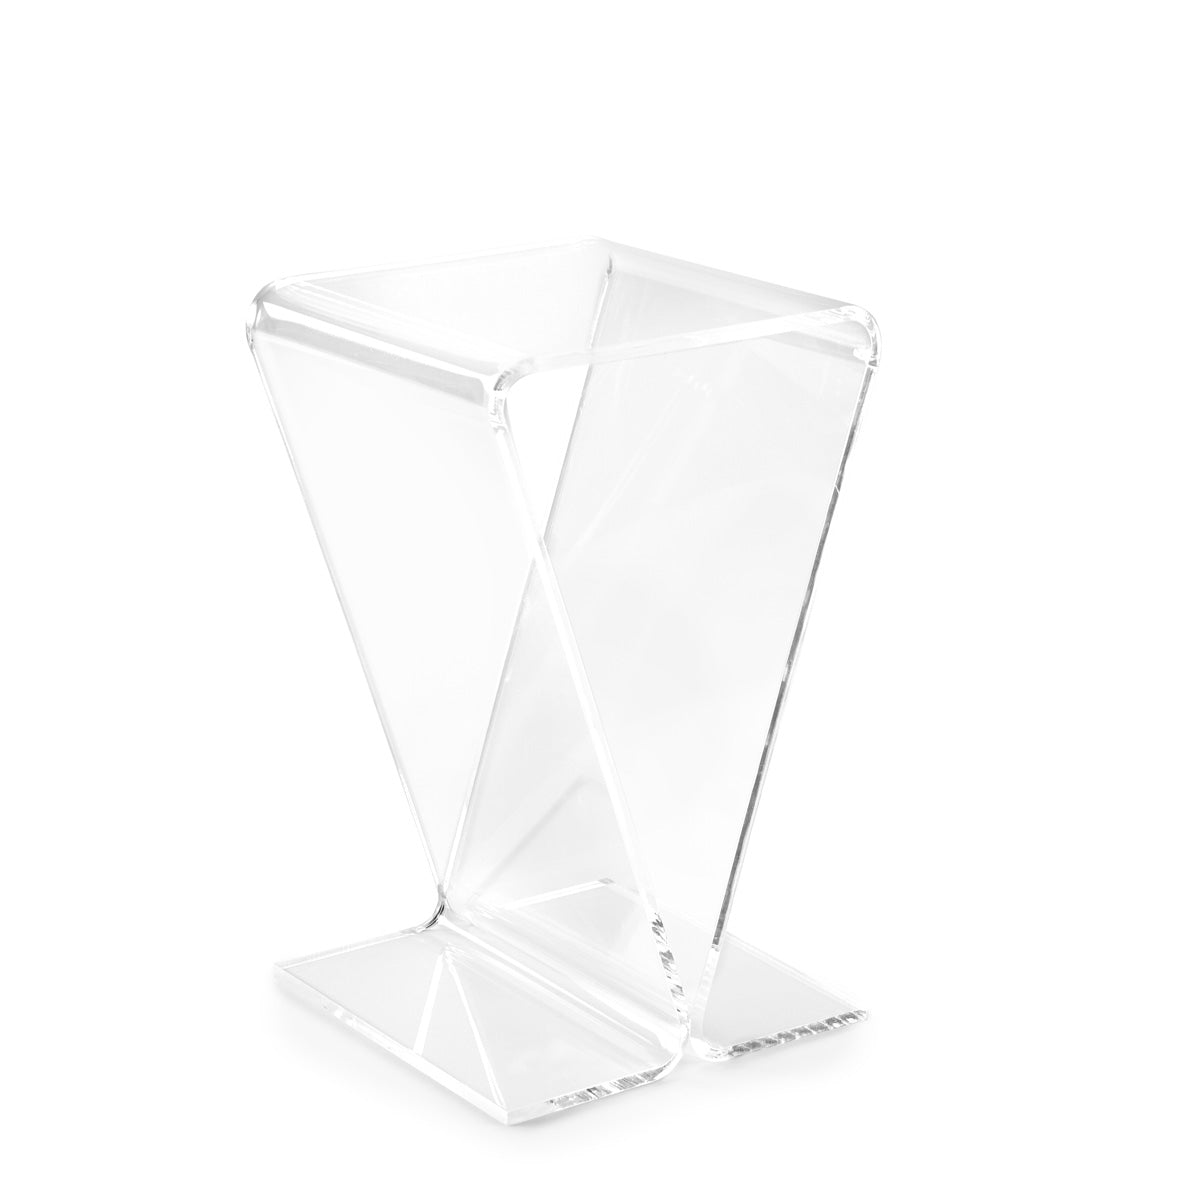 Clarté Acrylic V-Shaped End Table